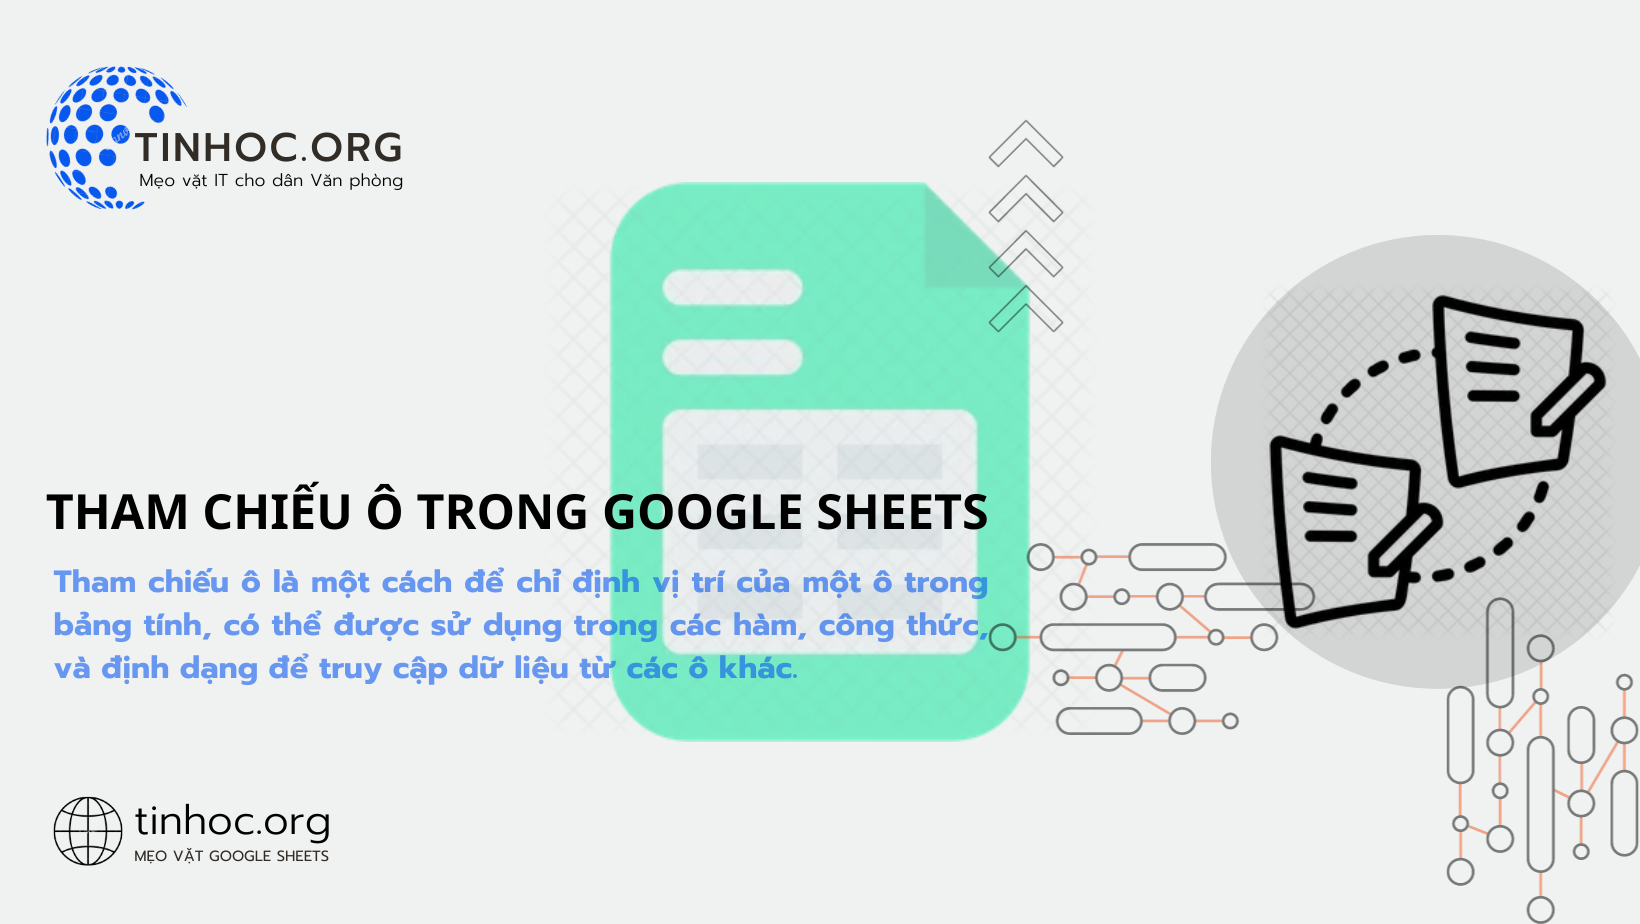 Tìm hiểu cách sử dụng tham chiếu ô trong Google Sheets, từ cơ bản đến nâng cao, giúp bạn thao tác dữ liệu hiệu quả hơn.